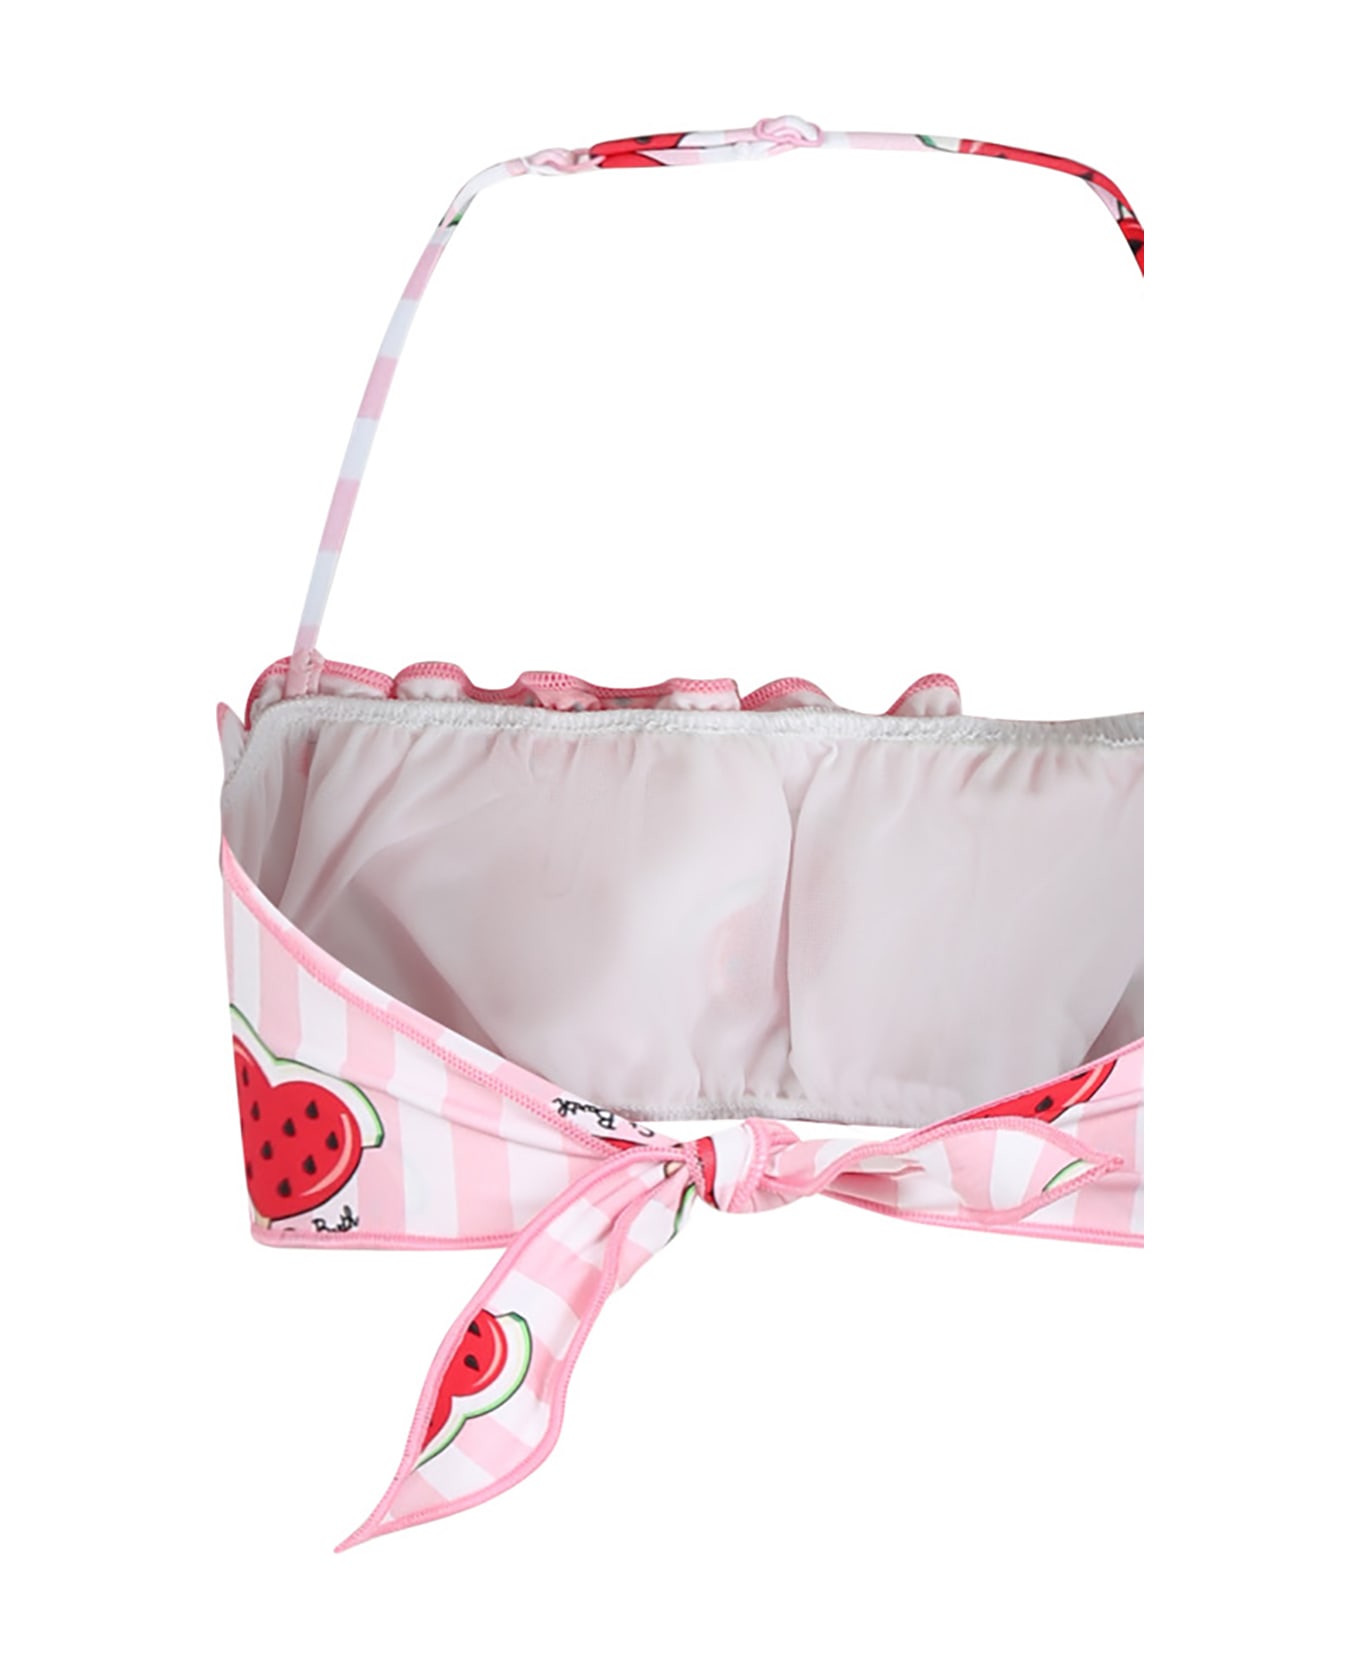 MC2 Saint Barth Pink Bikini For Girl With Strawberries And Hearts - Pink 水着